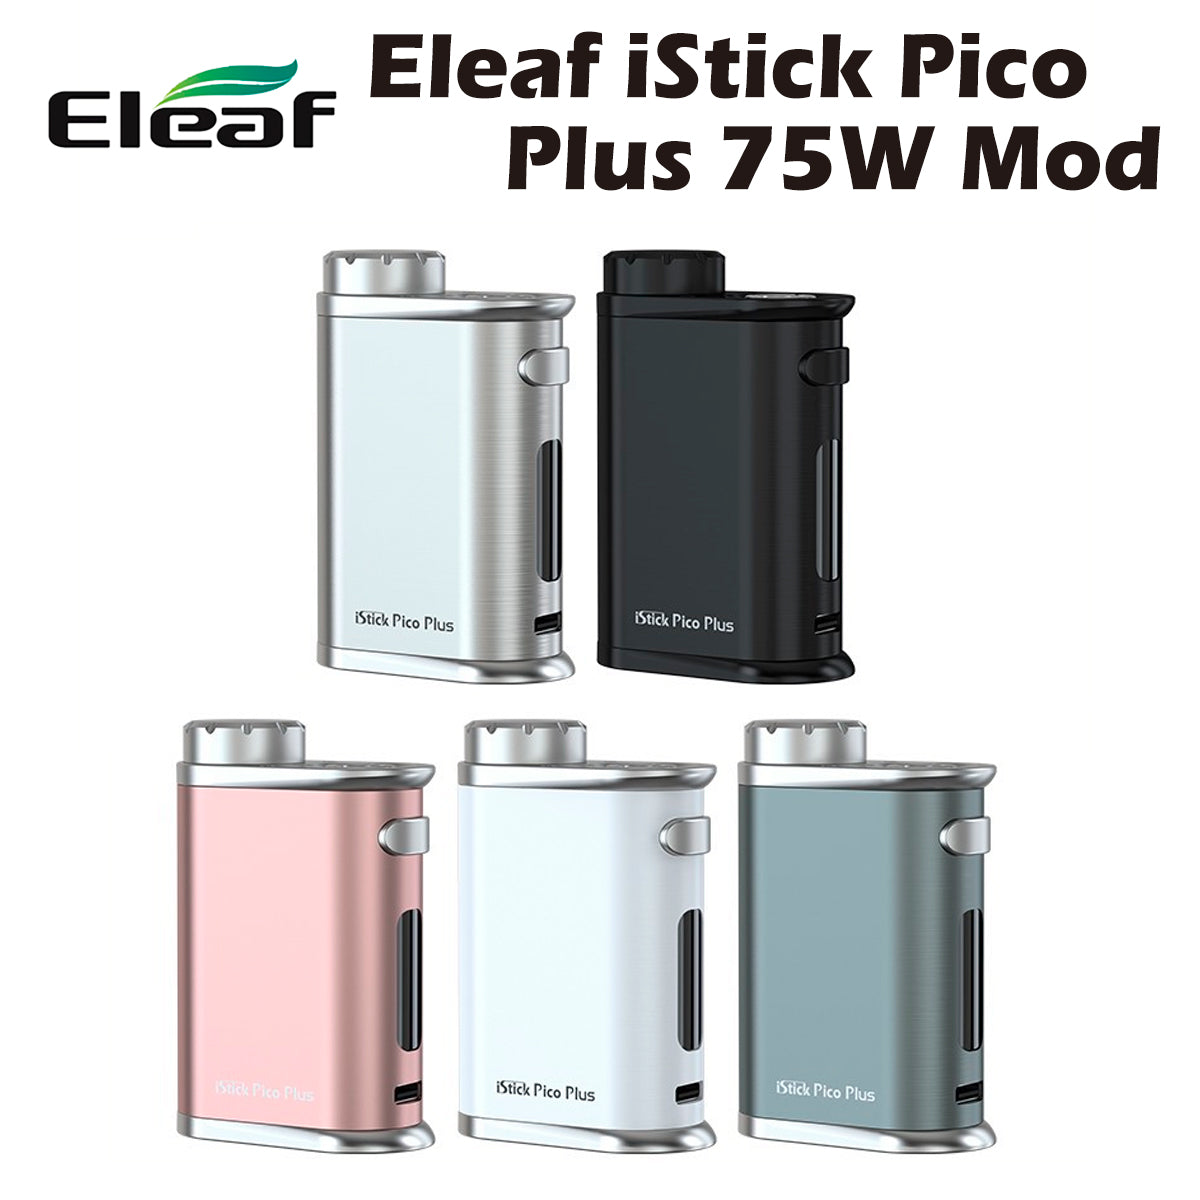 【送料無料】Eleaf iStick Pico Plus 75W MOD テクニカル モッド イーリーフ アイスティック ピコ プラス 電子タバコ 電子たばこ vape 510規格 スレッド カートリッジ アトマイザー